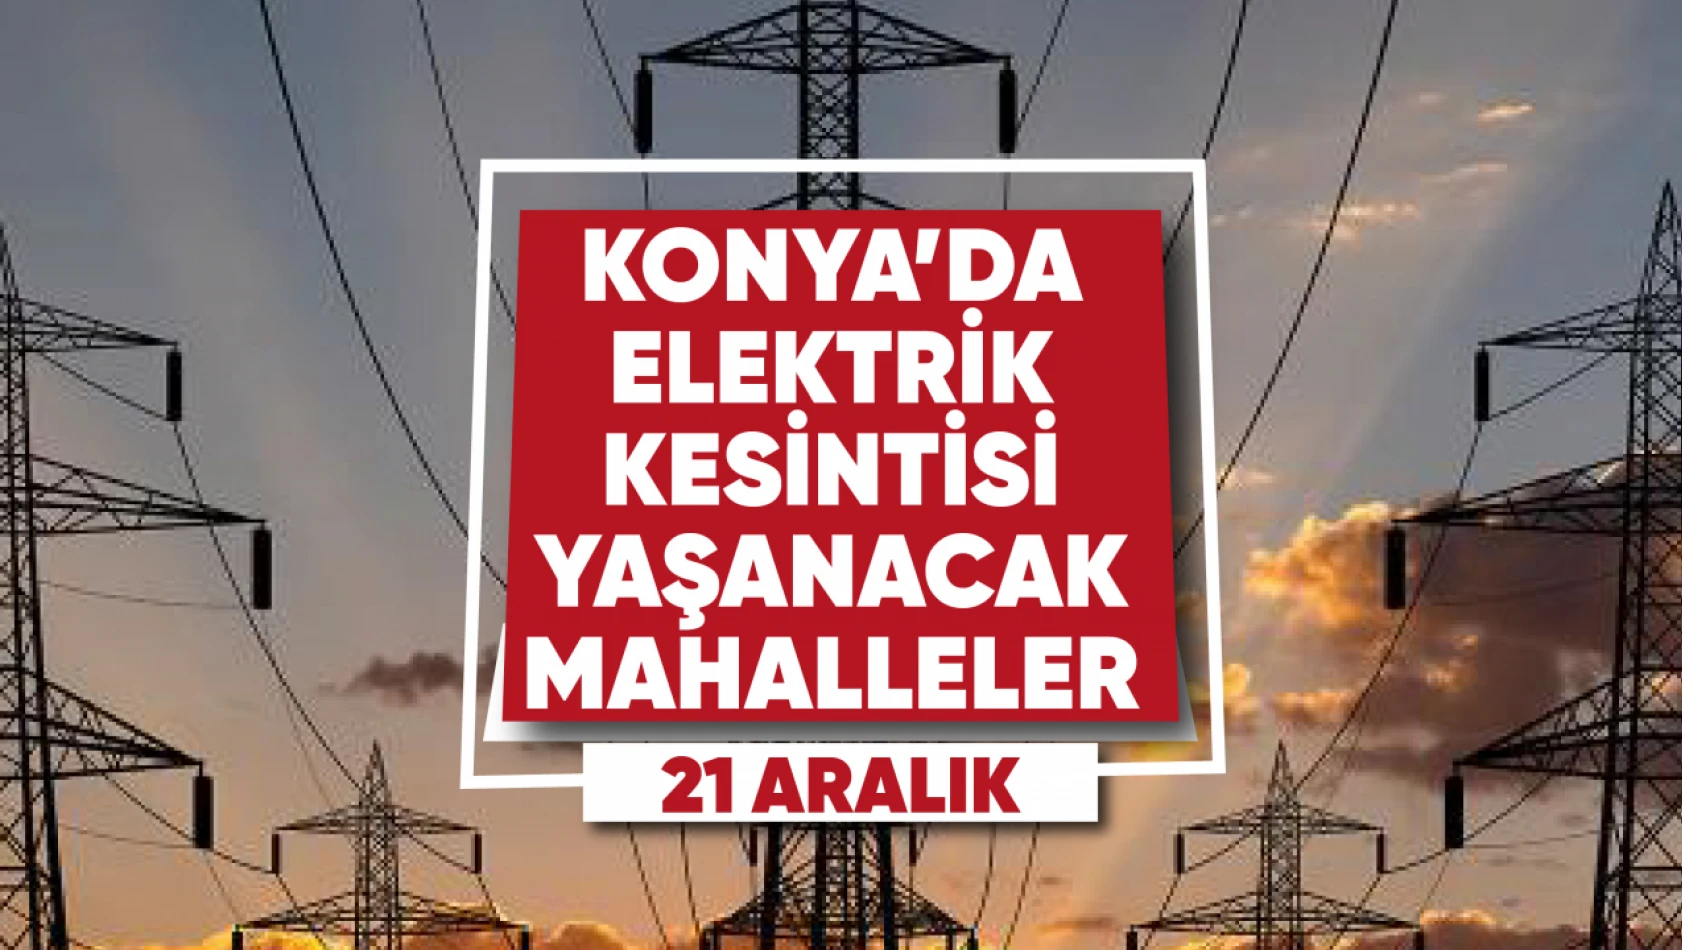 Konya'da elektrik kesintisi yaşanacak mahalle ve sokaklar (21 Aralık)